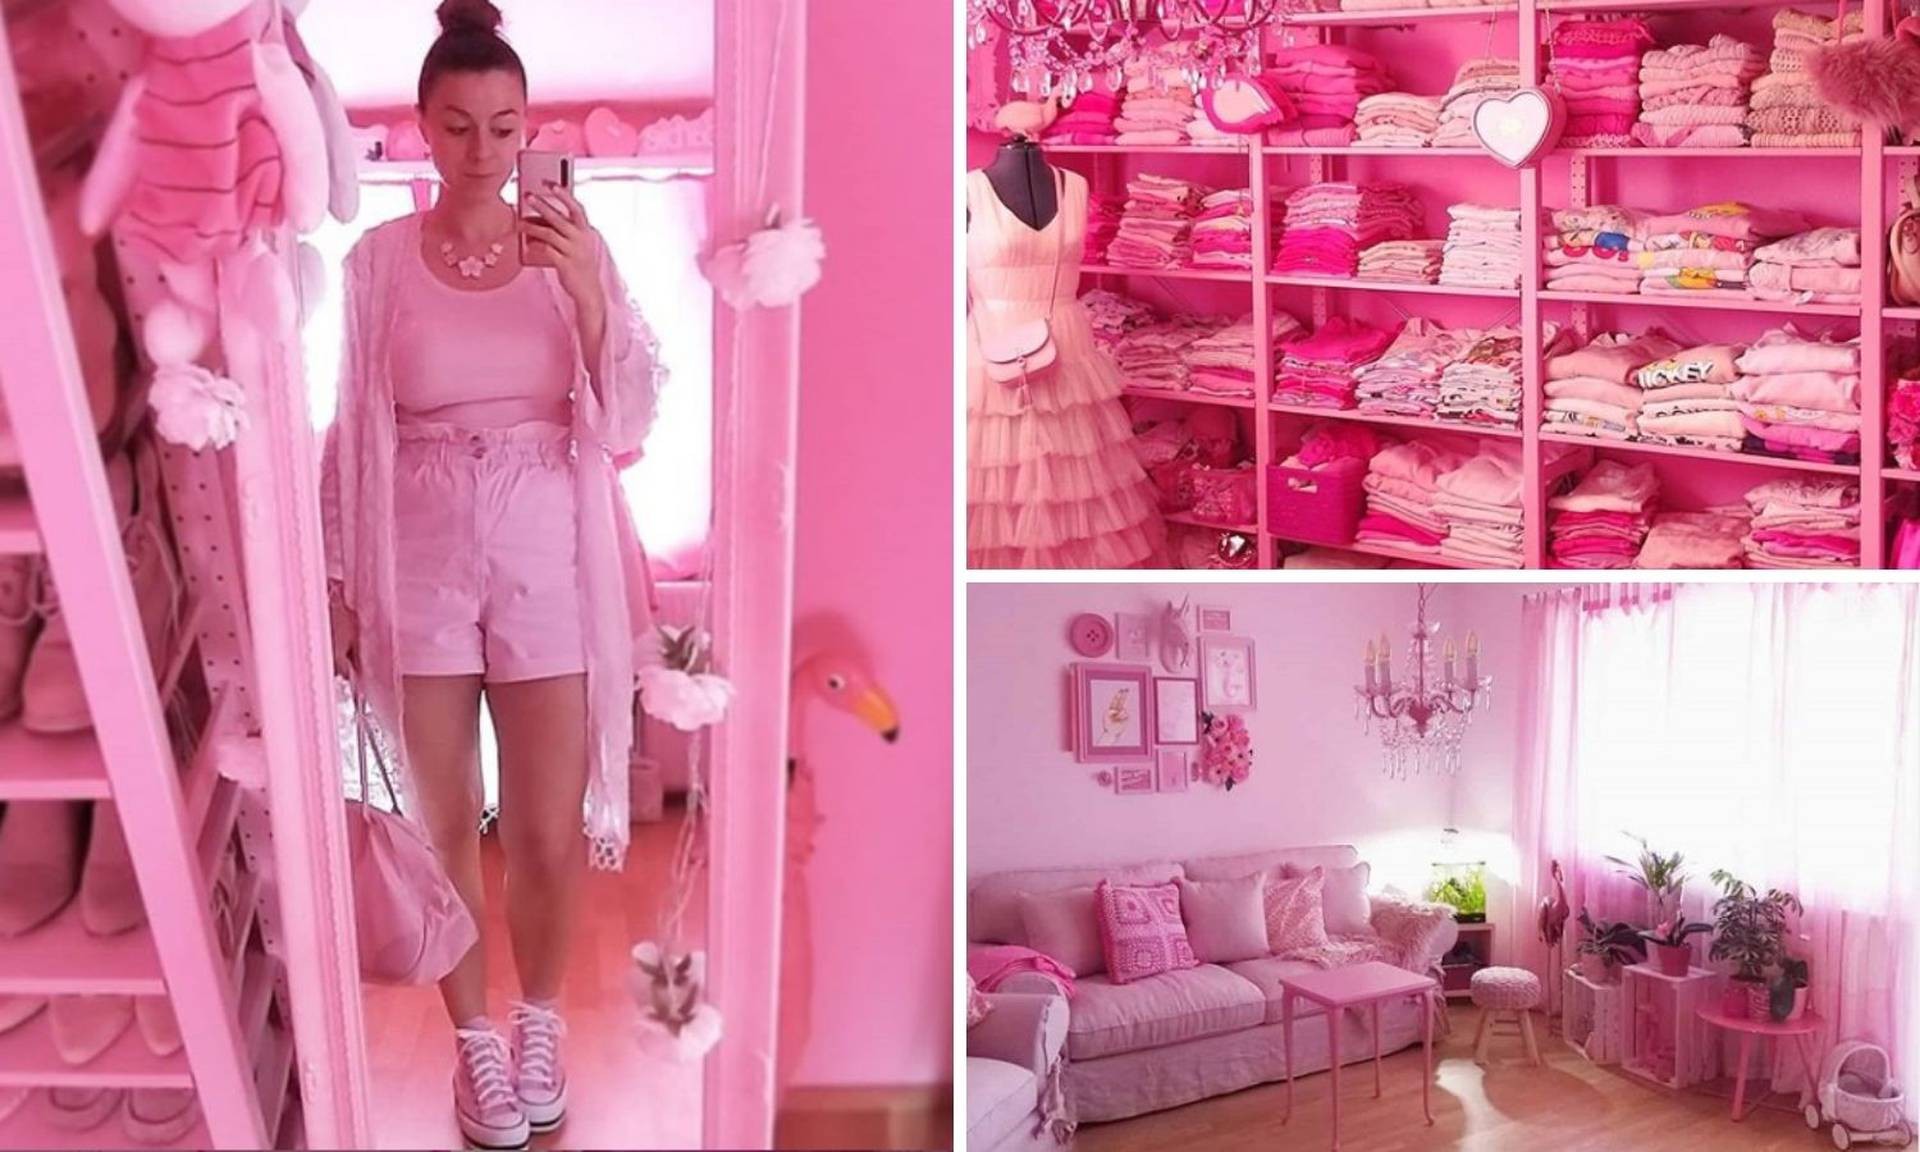 Опседната со розова боја: Веќе 13 години не носи ништо во друга боја, а и целиот стан и розов